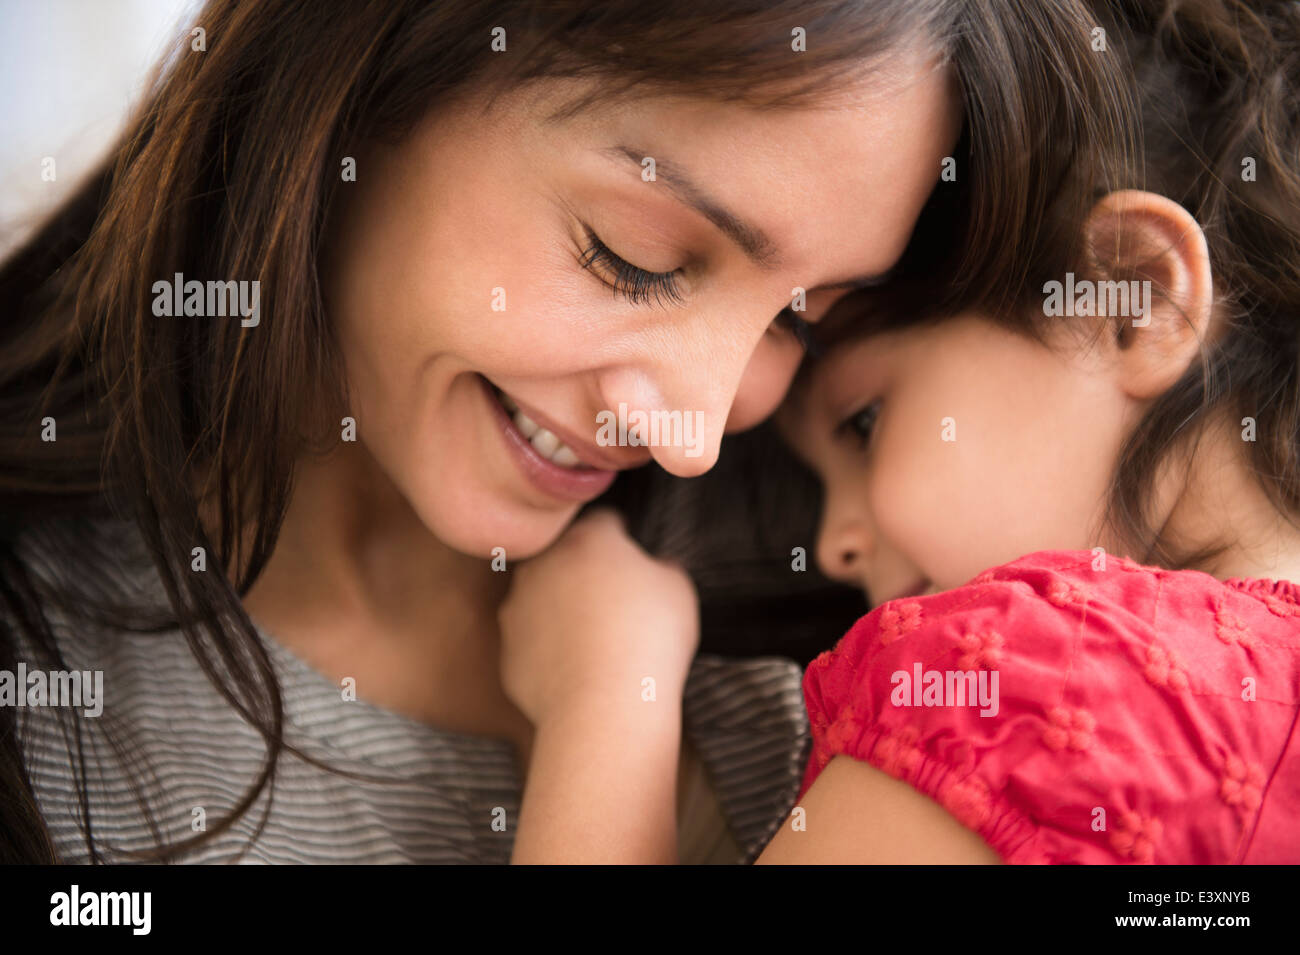 Hispanic girl whispering in mother's ear Stock Photo